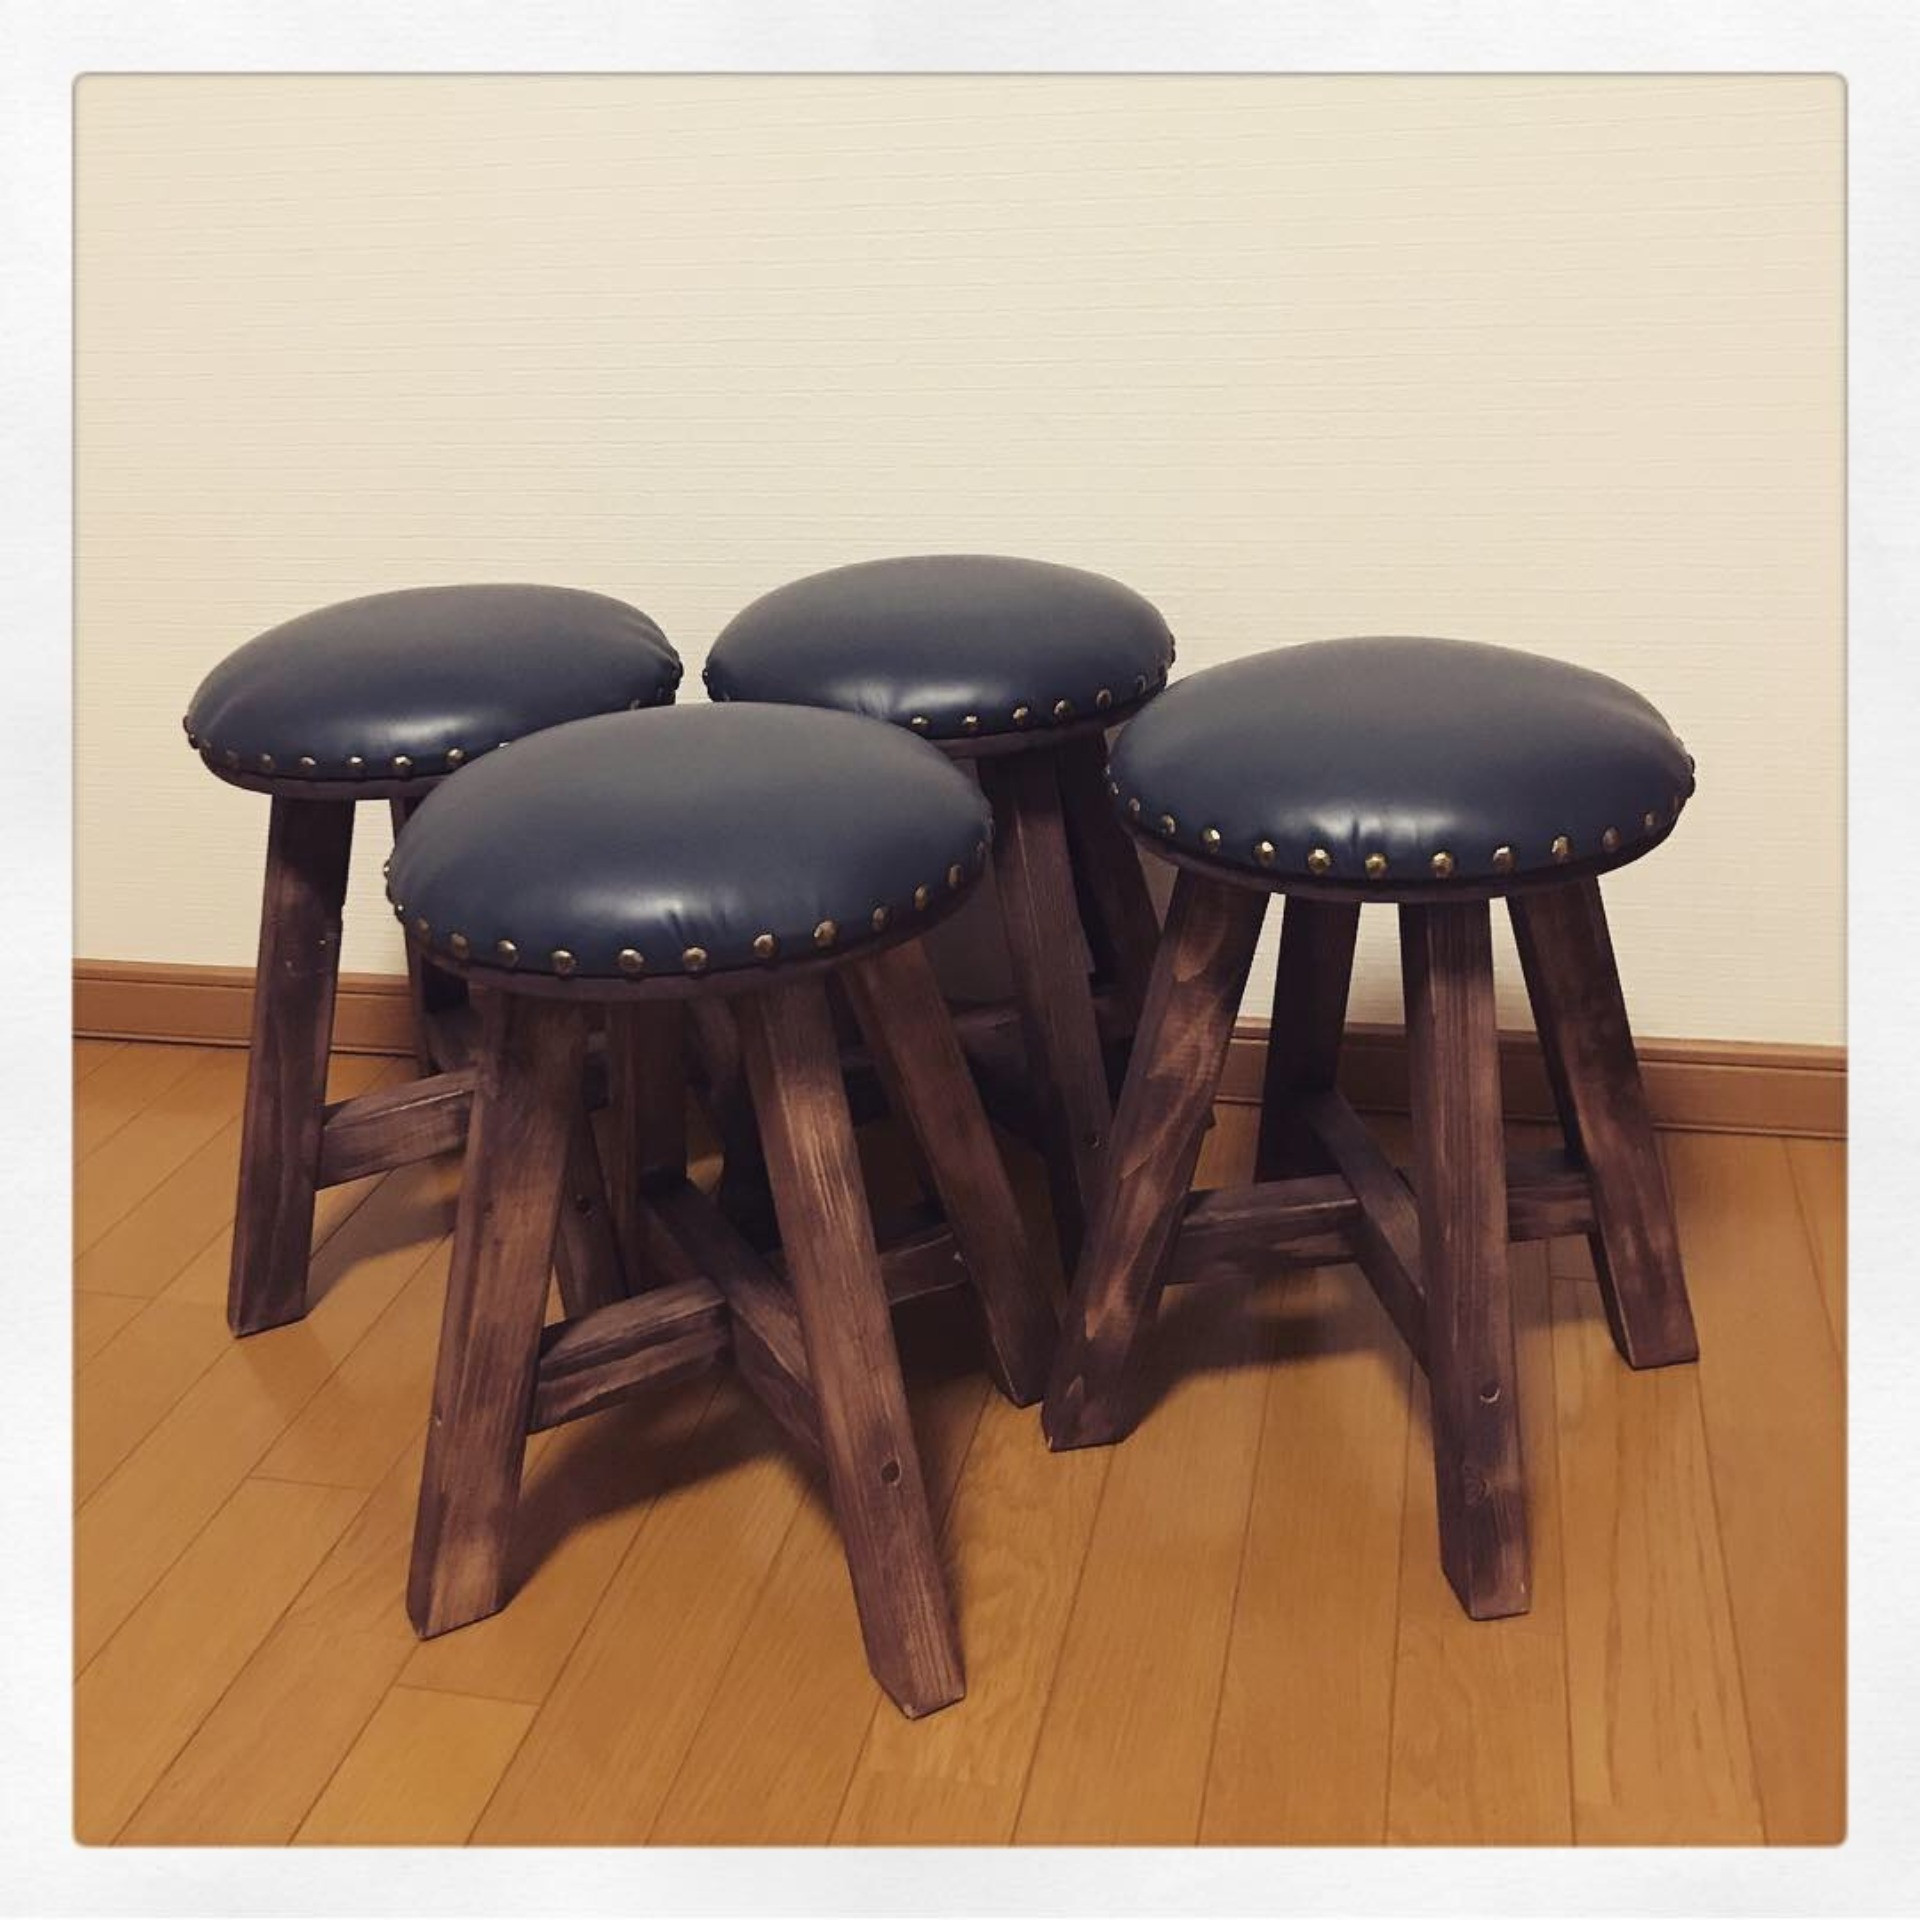 オーダーメイドでも椅子を販売しているtukuru Woodwork fujimotoのFAQはこちら